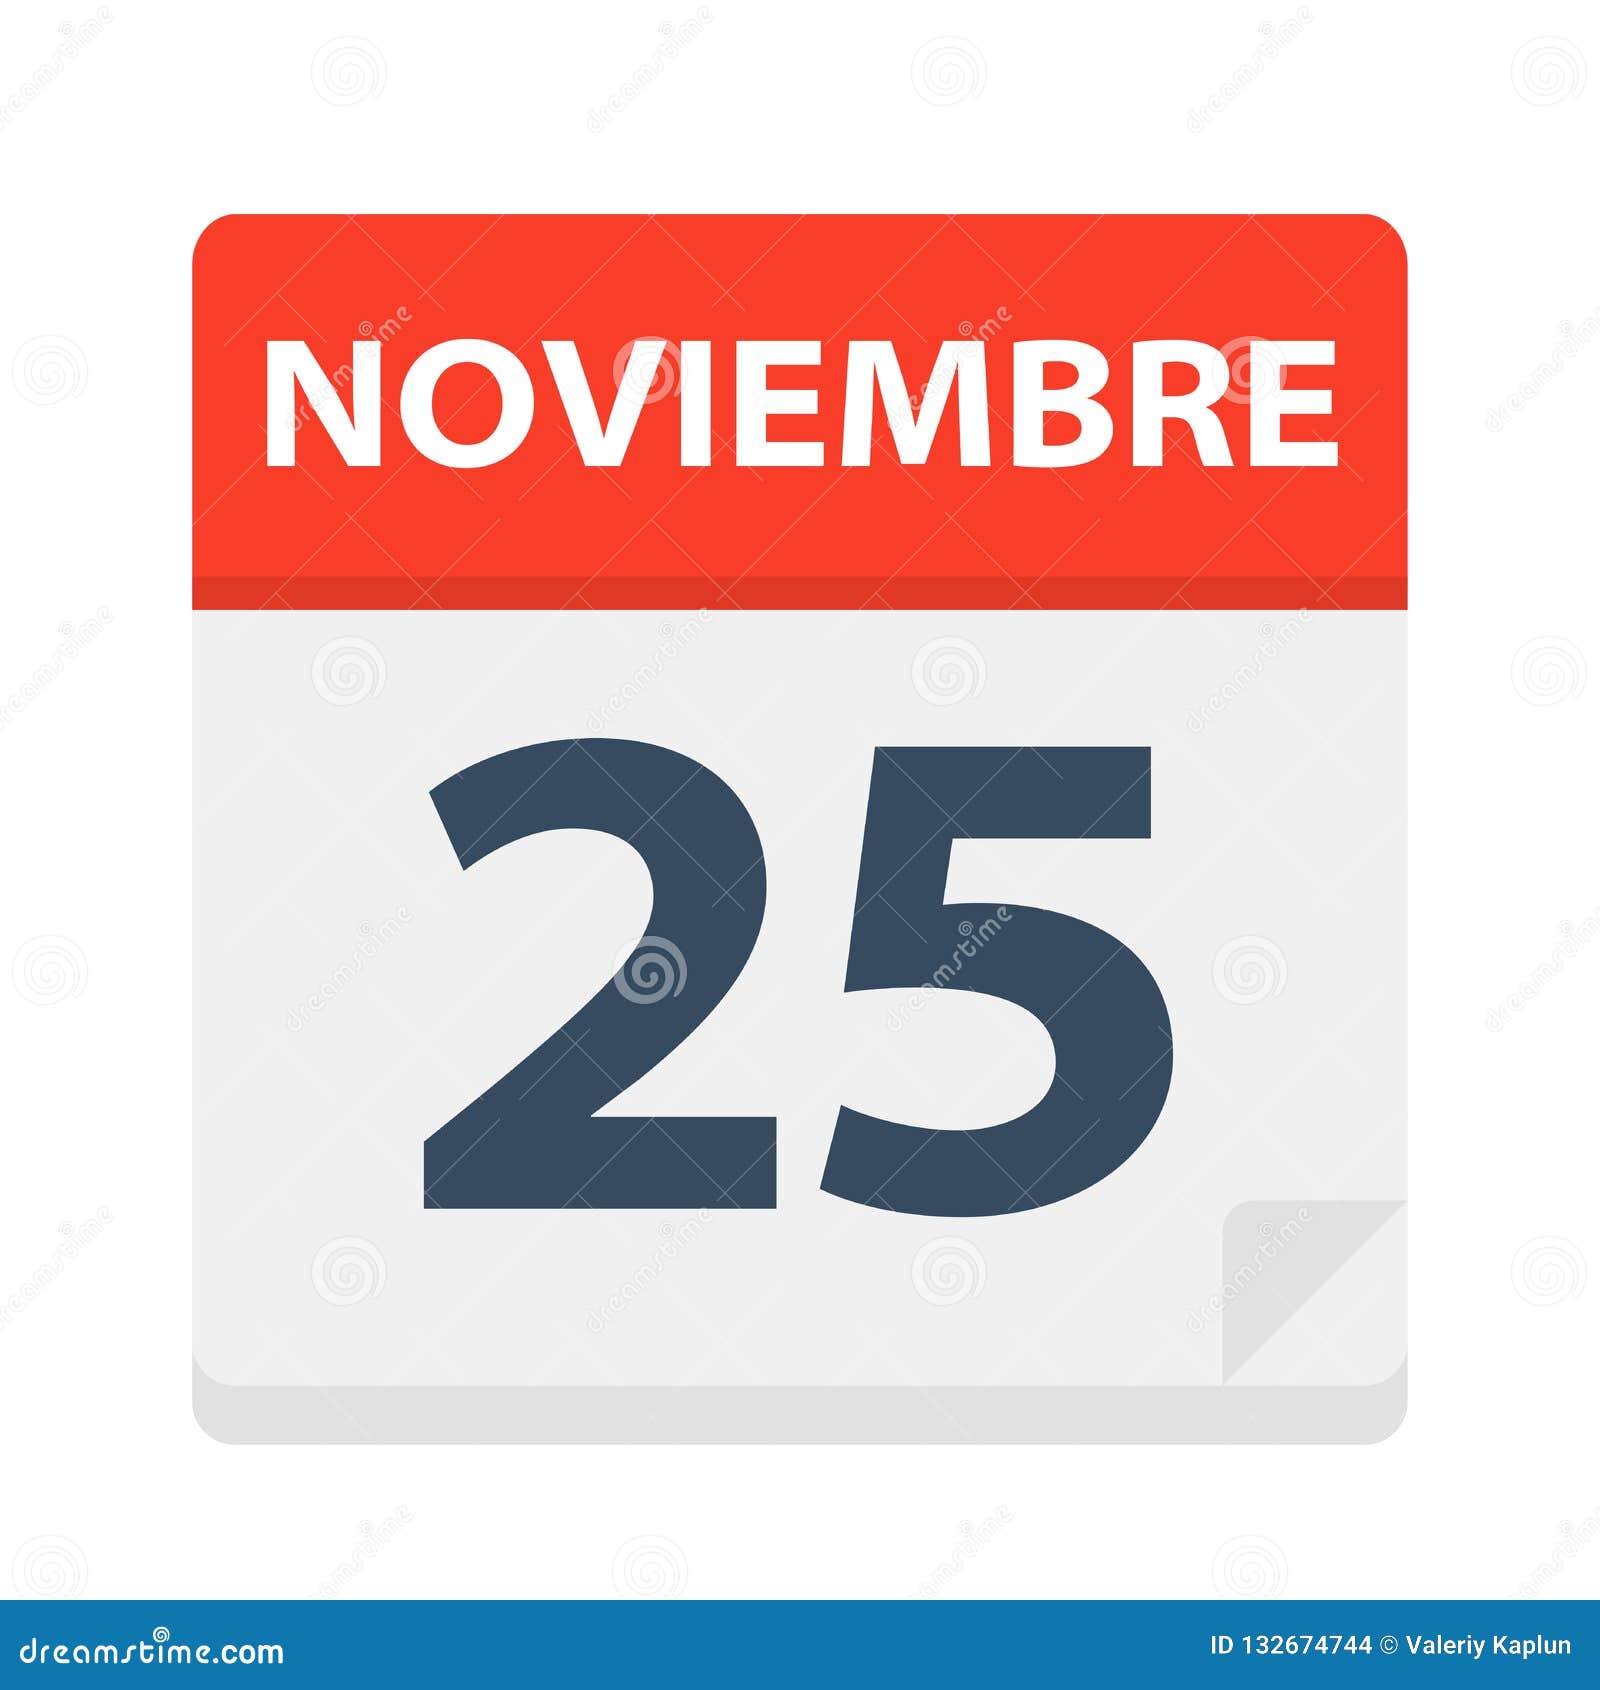 noviembre 25 - calendar icon - november 25.   of spanish calendar leaf